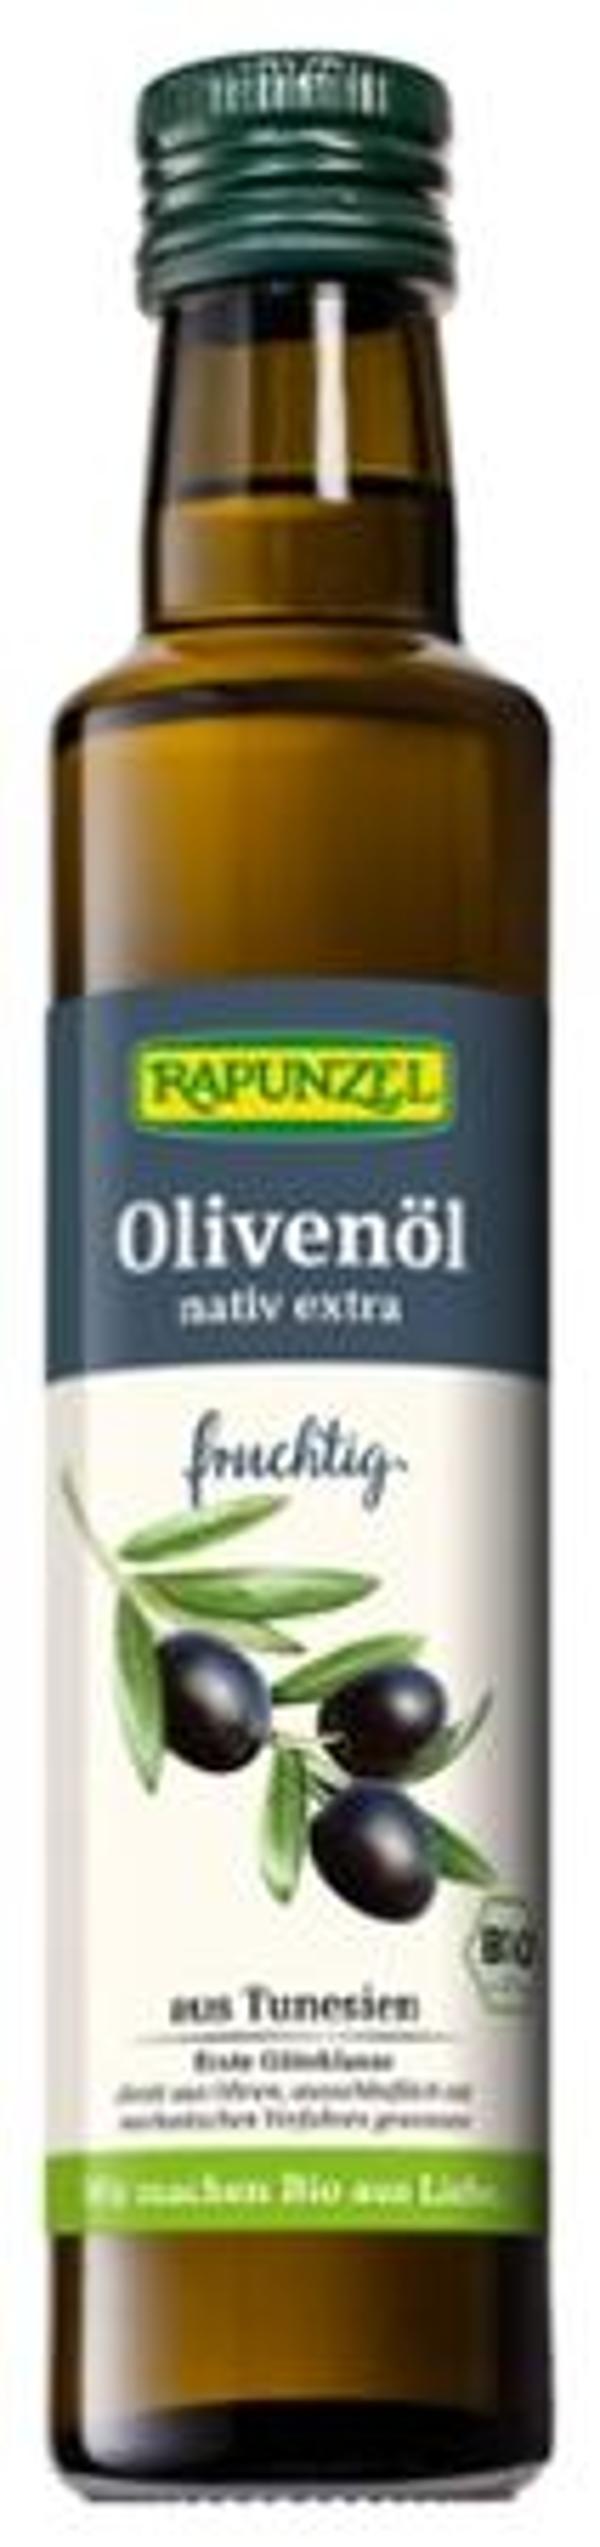 Produktfoto zu Olivenöl fruchtig 250ml Rapunzel